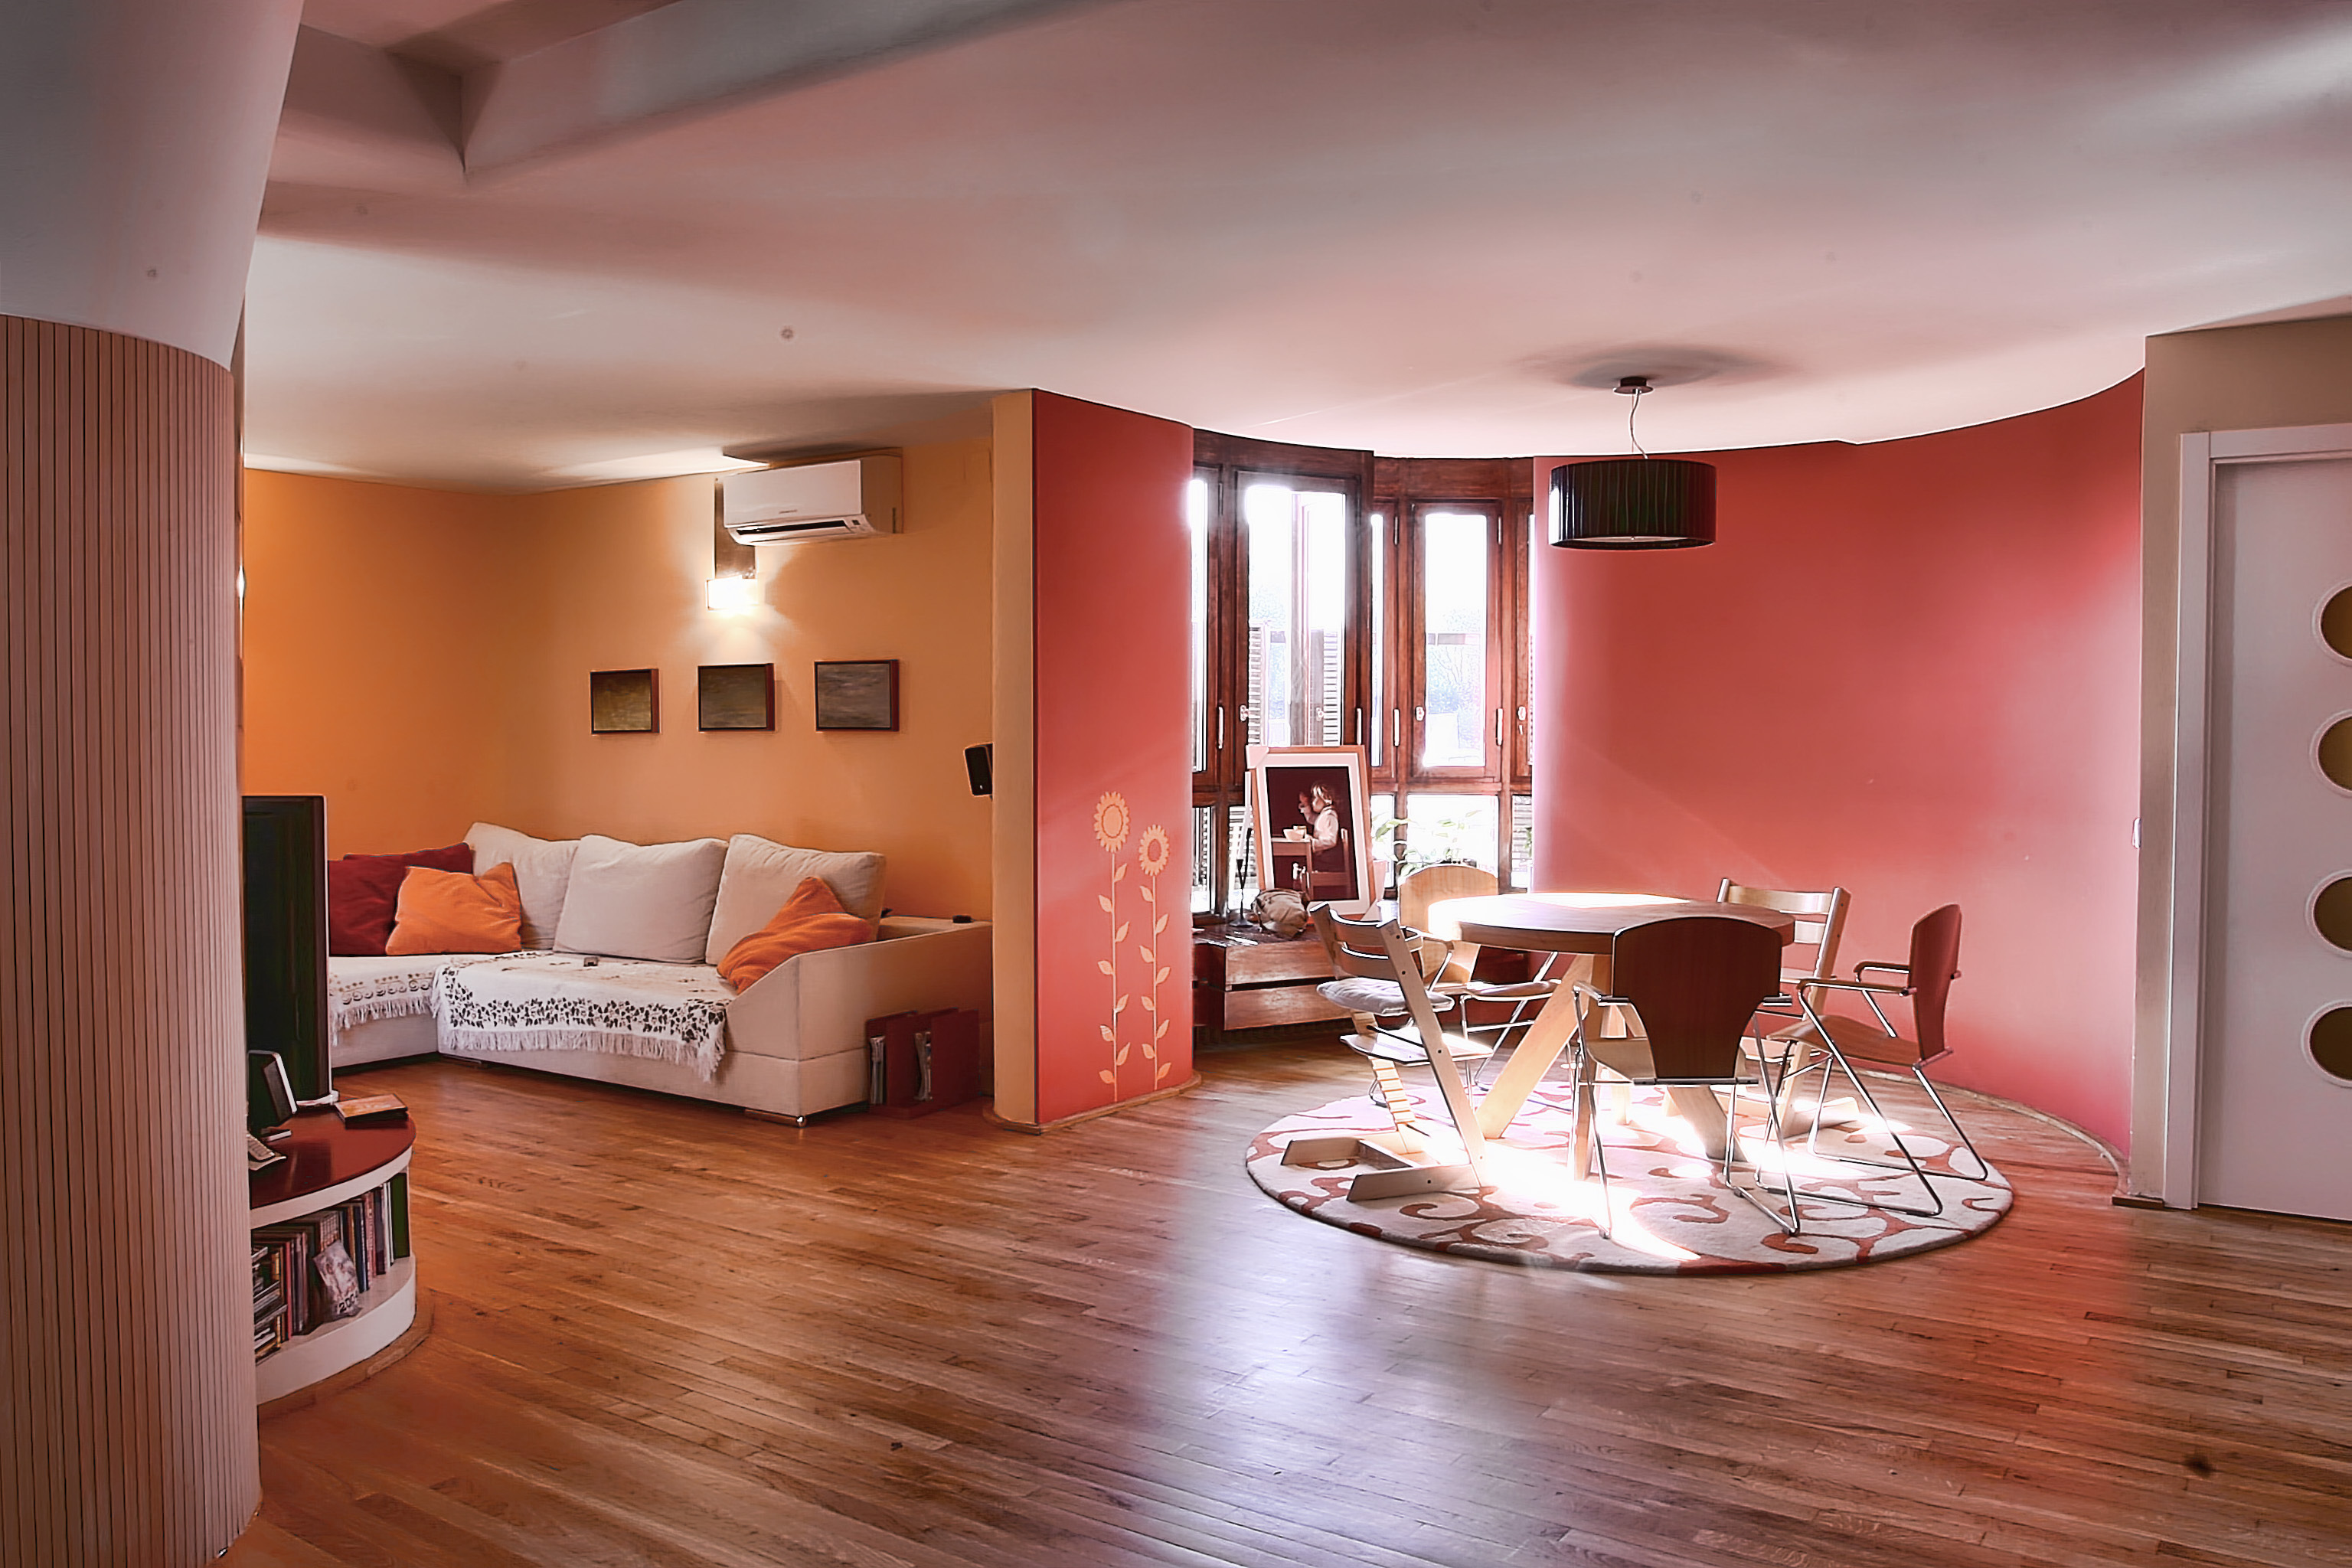 Мов квартиры. Красивая квартира. Интерьер жилой комнаты. Персиковый цвет стен в интерьере. Дизайн квартиры.